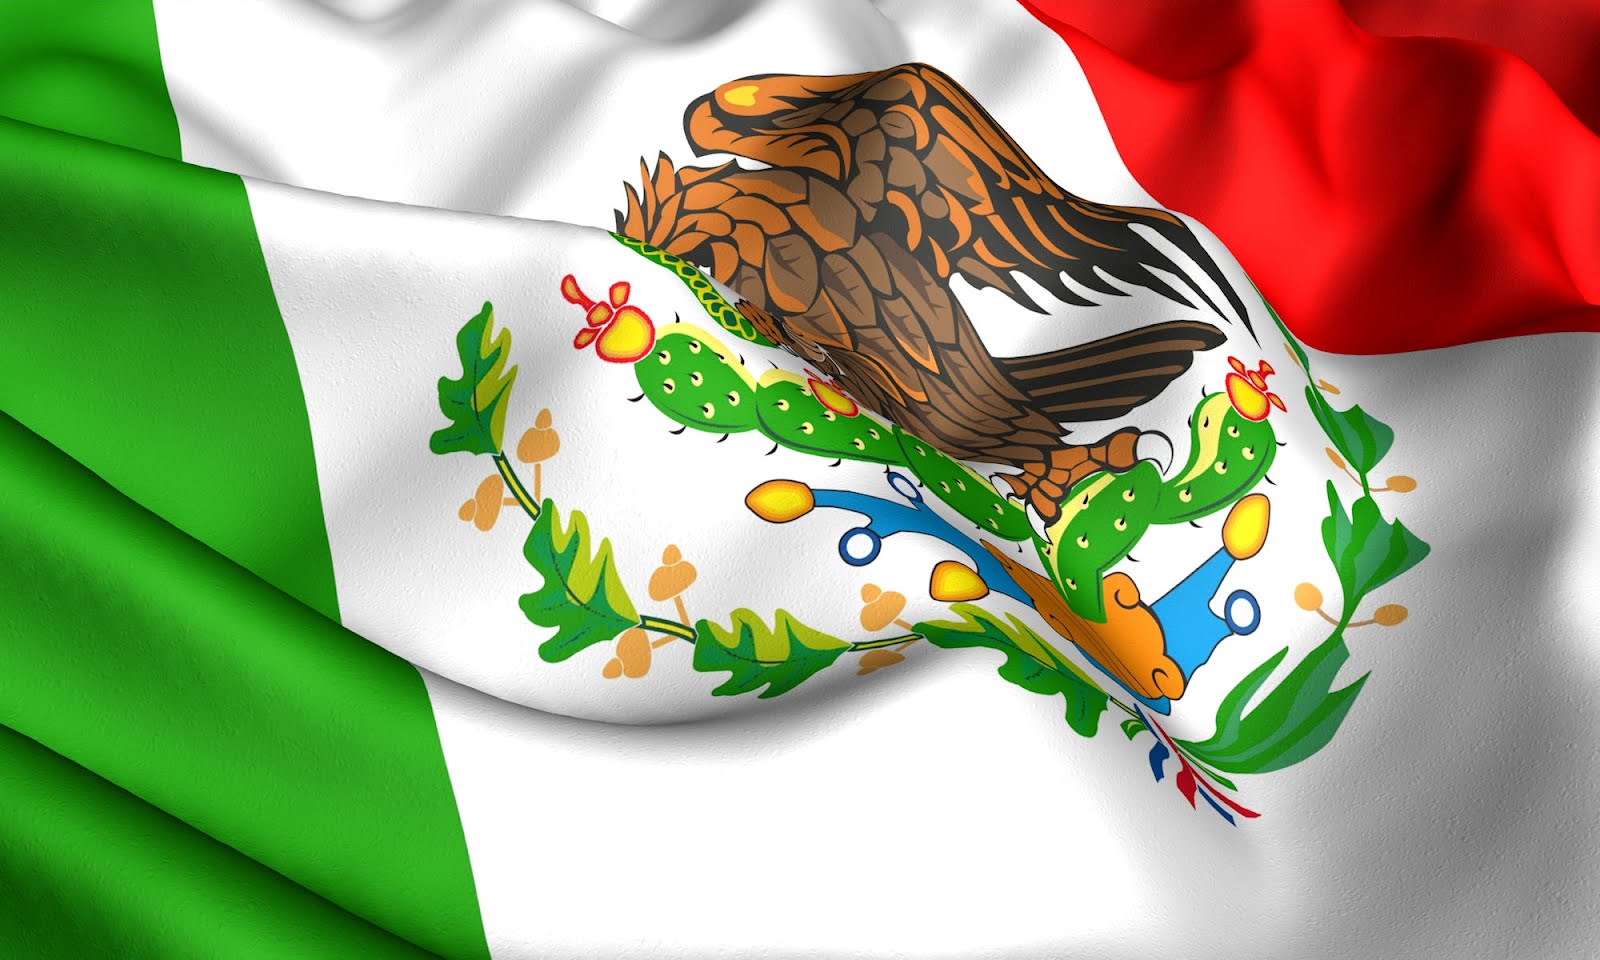  viva mexico le cri de l independance mexique